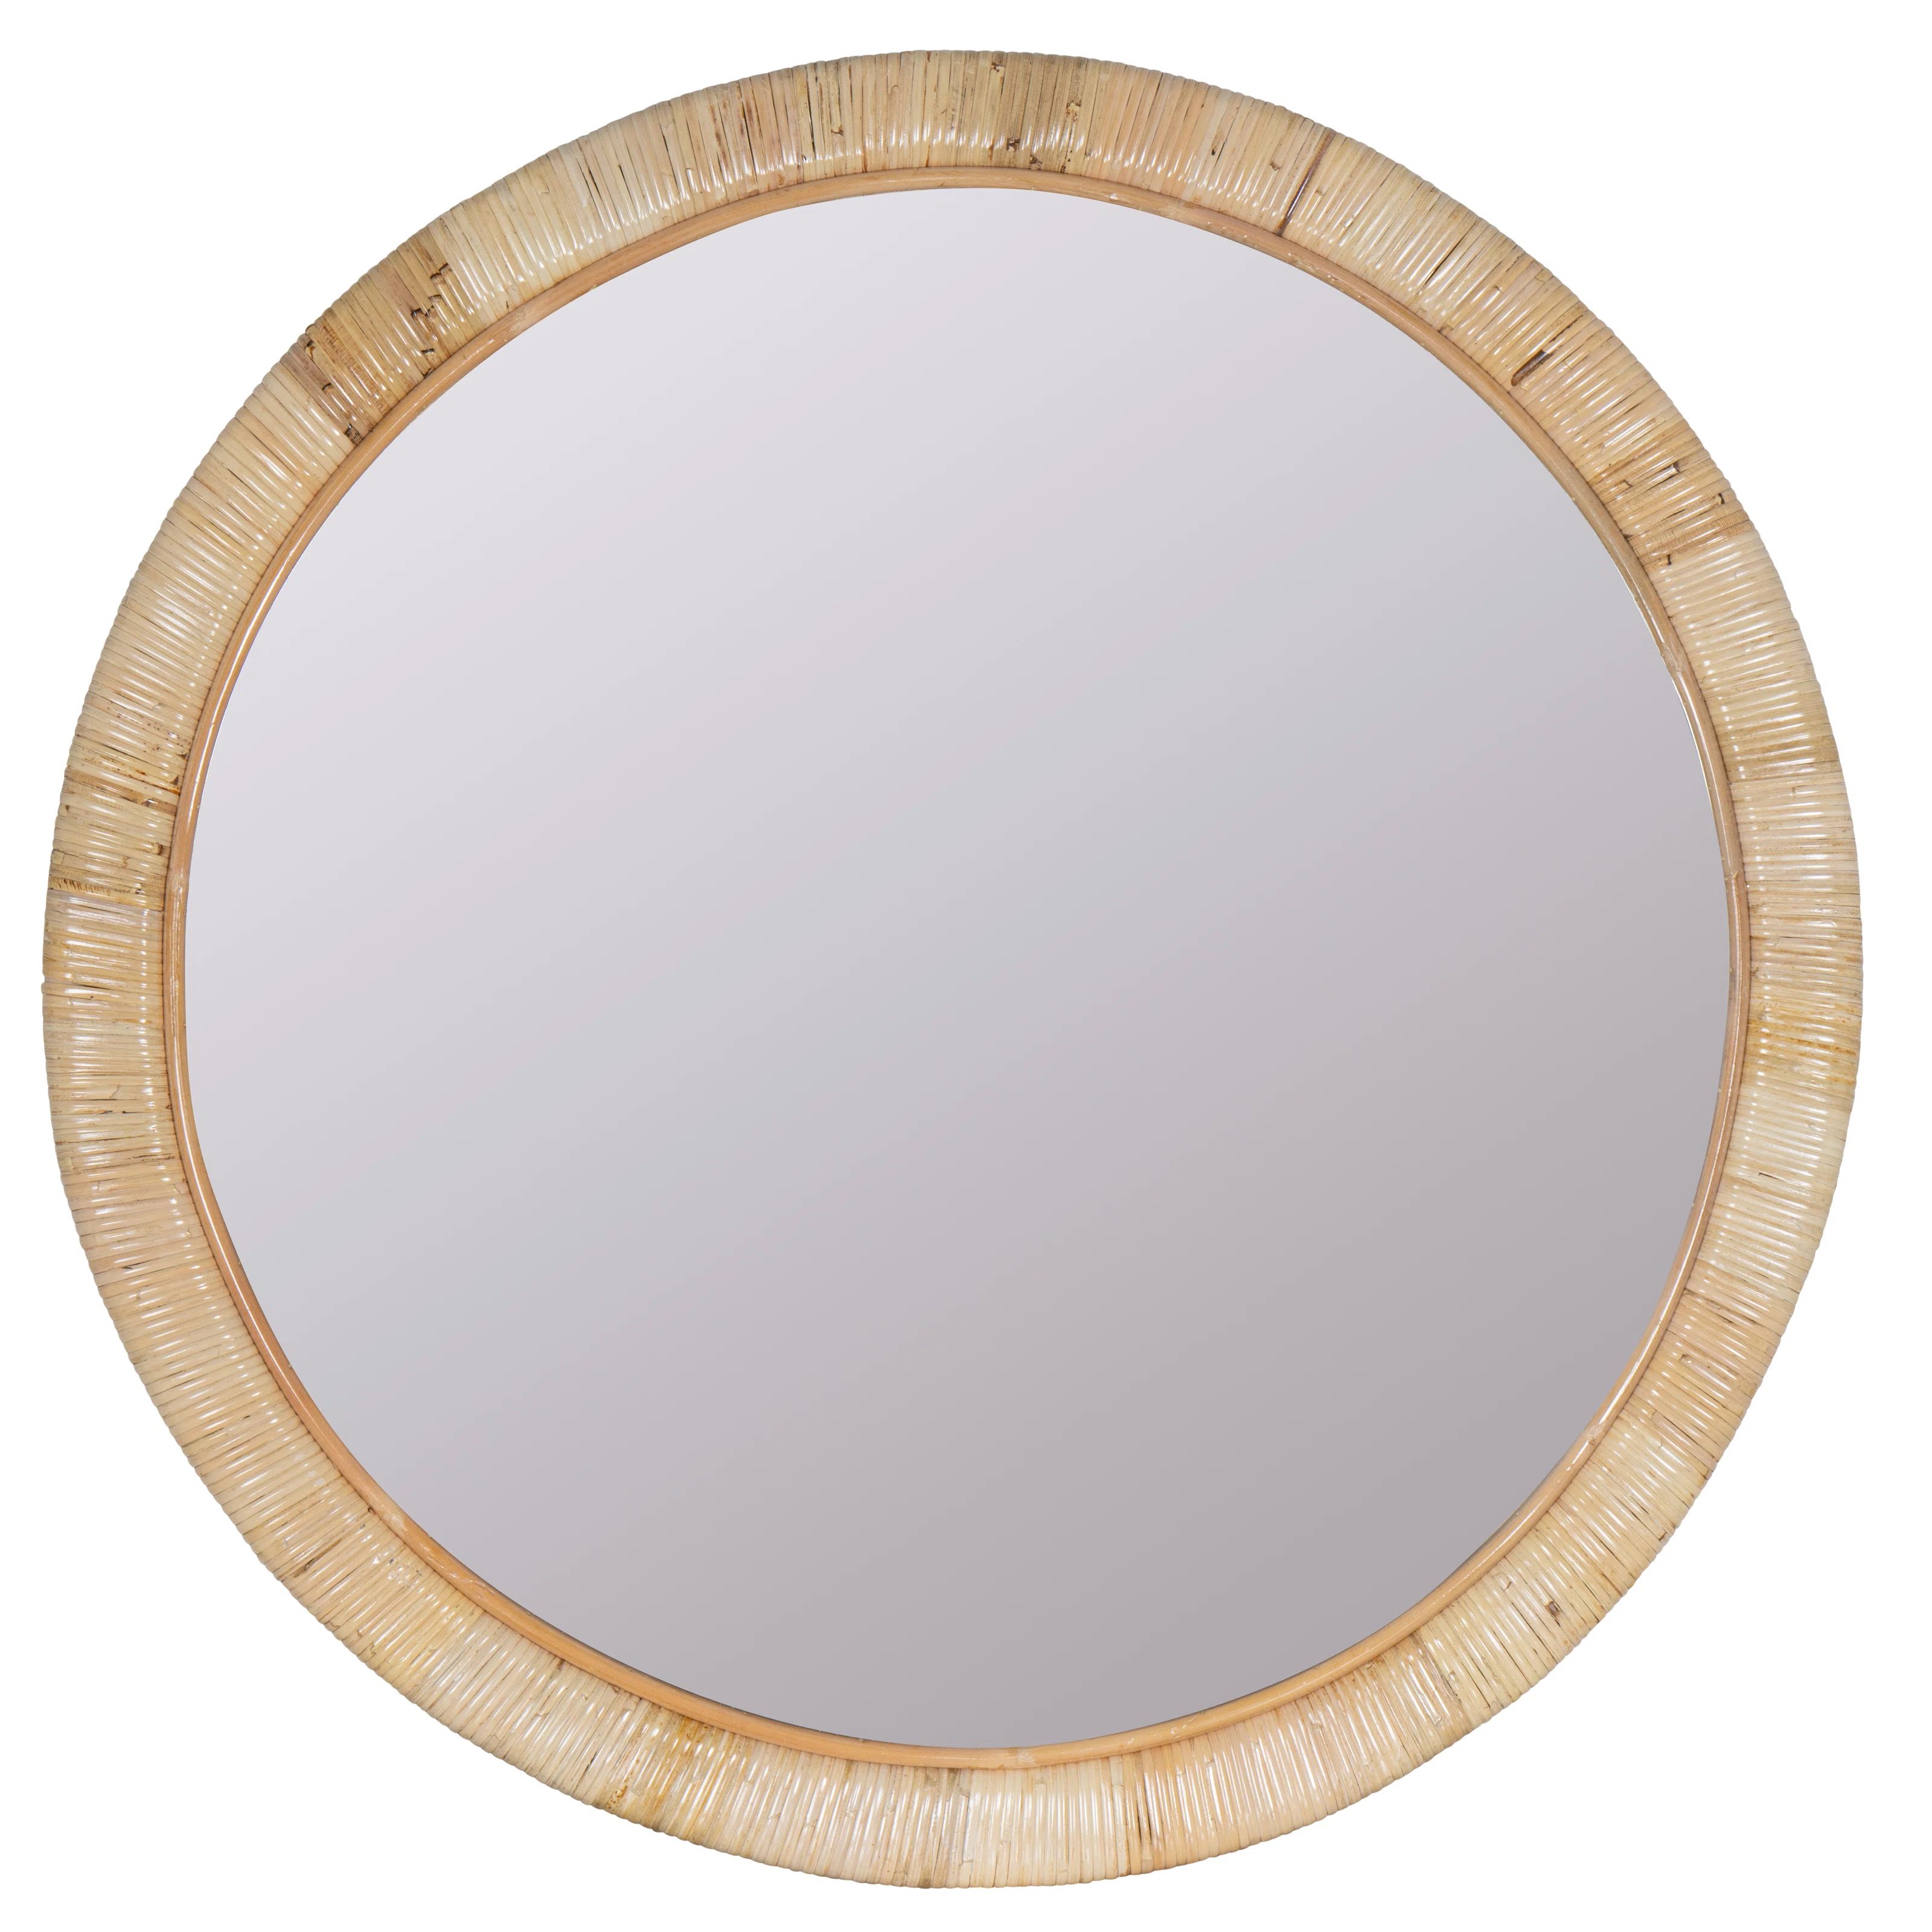 Cheshunt Round Rattan Wall Mirror | Wayfair North America